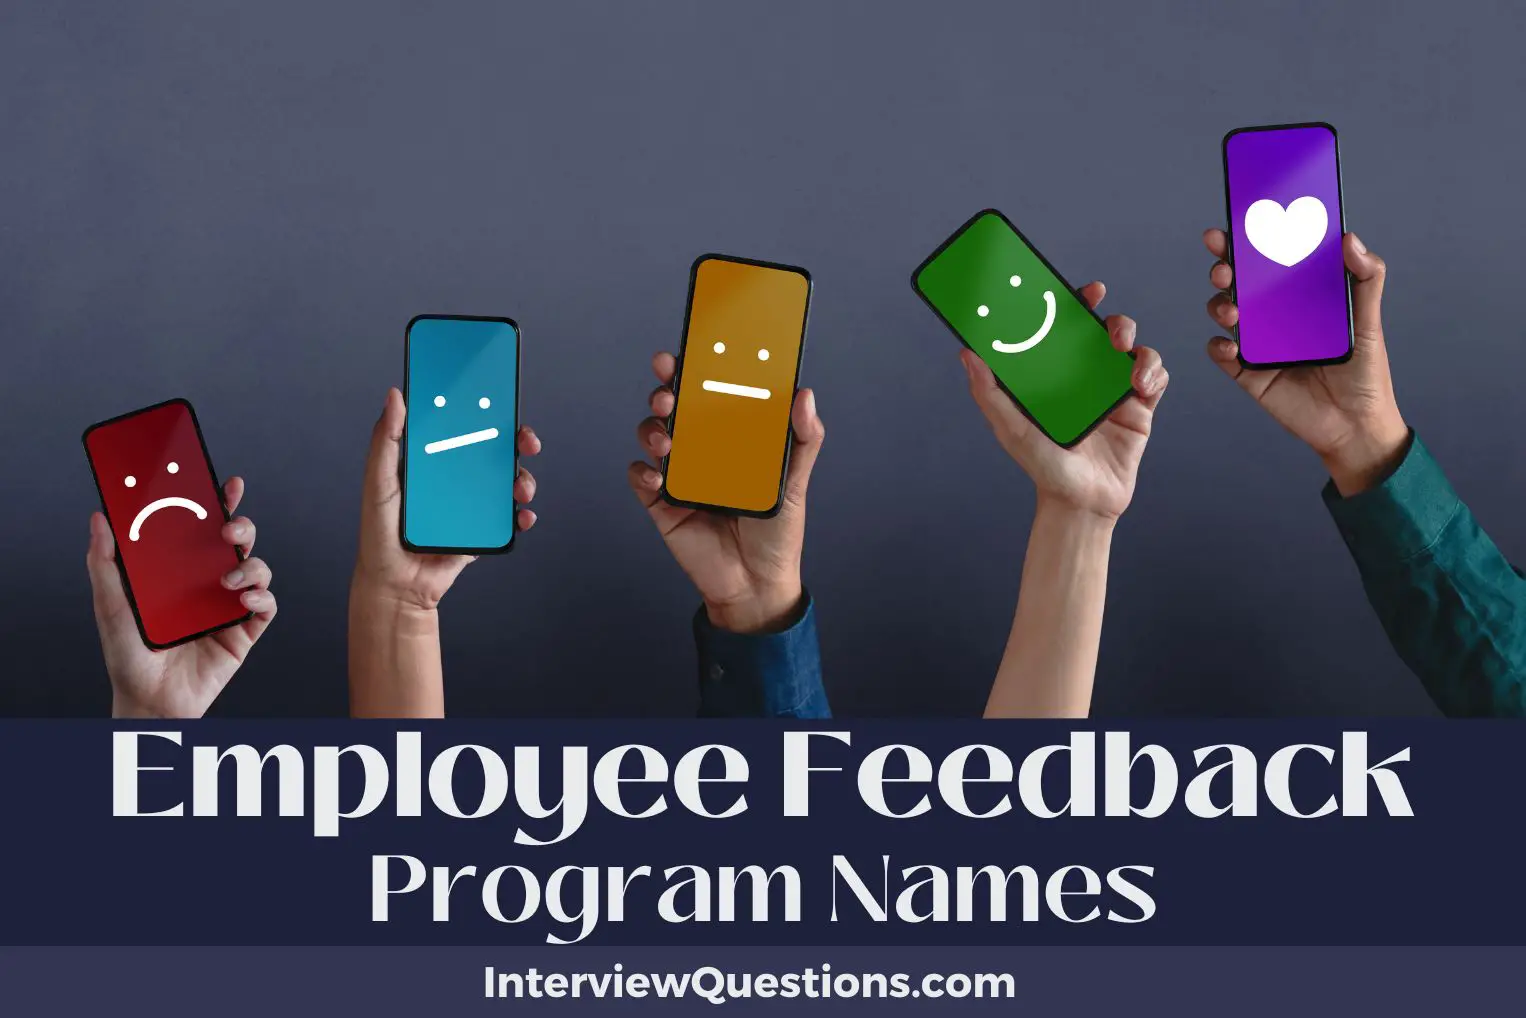 Employee Feedback Program Names